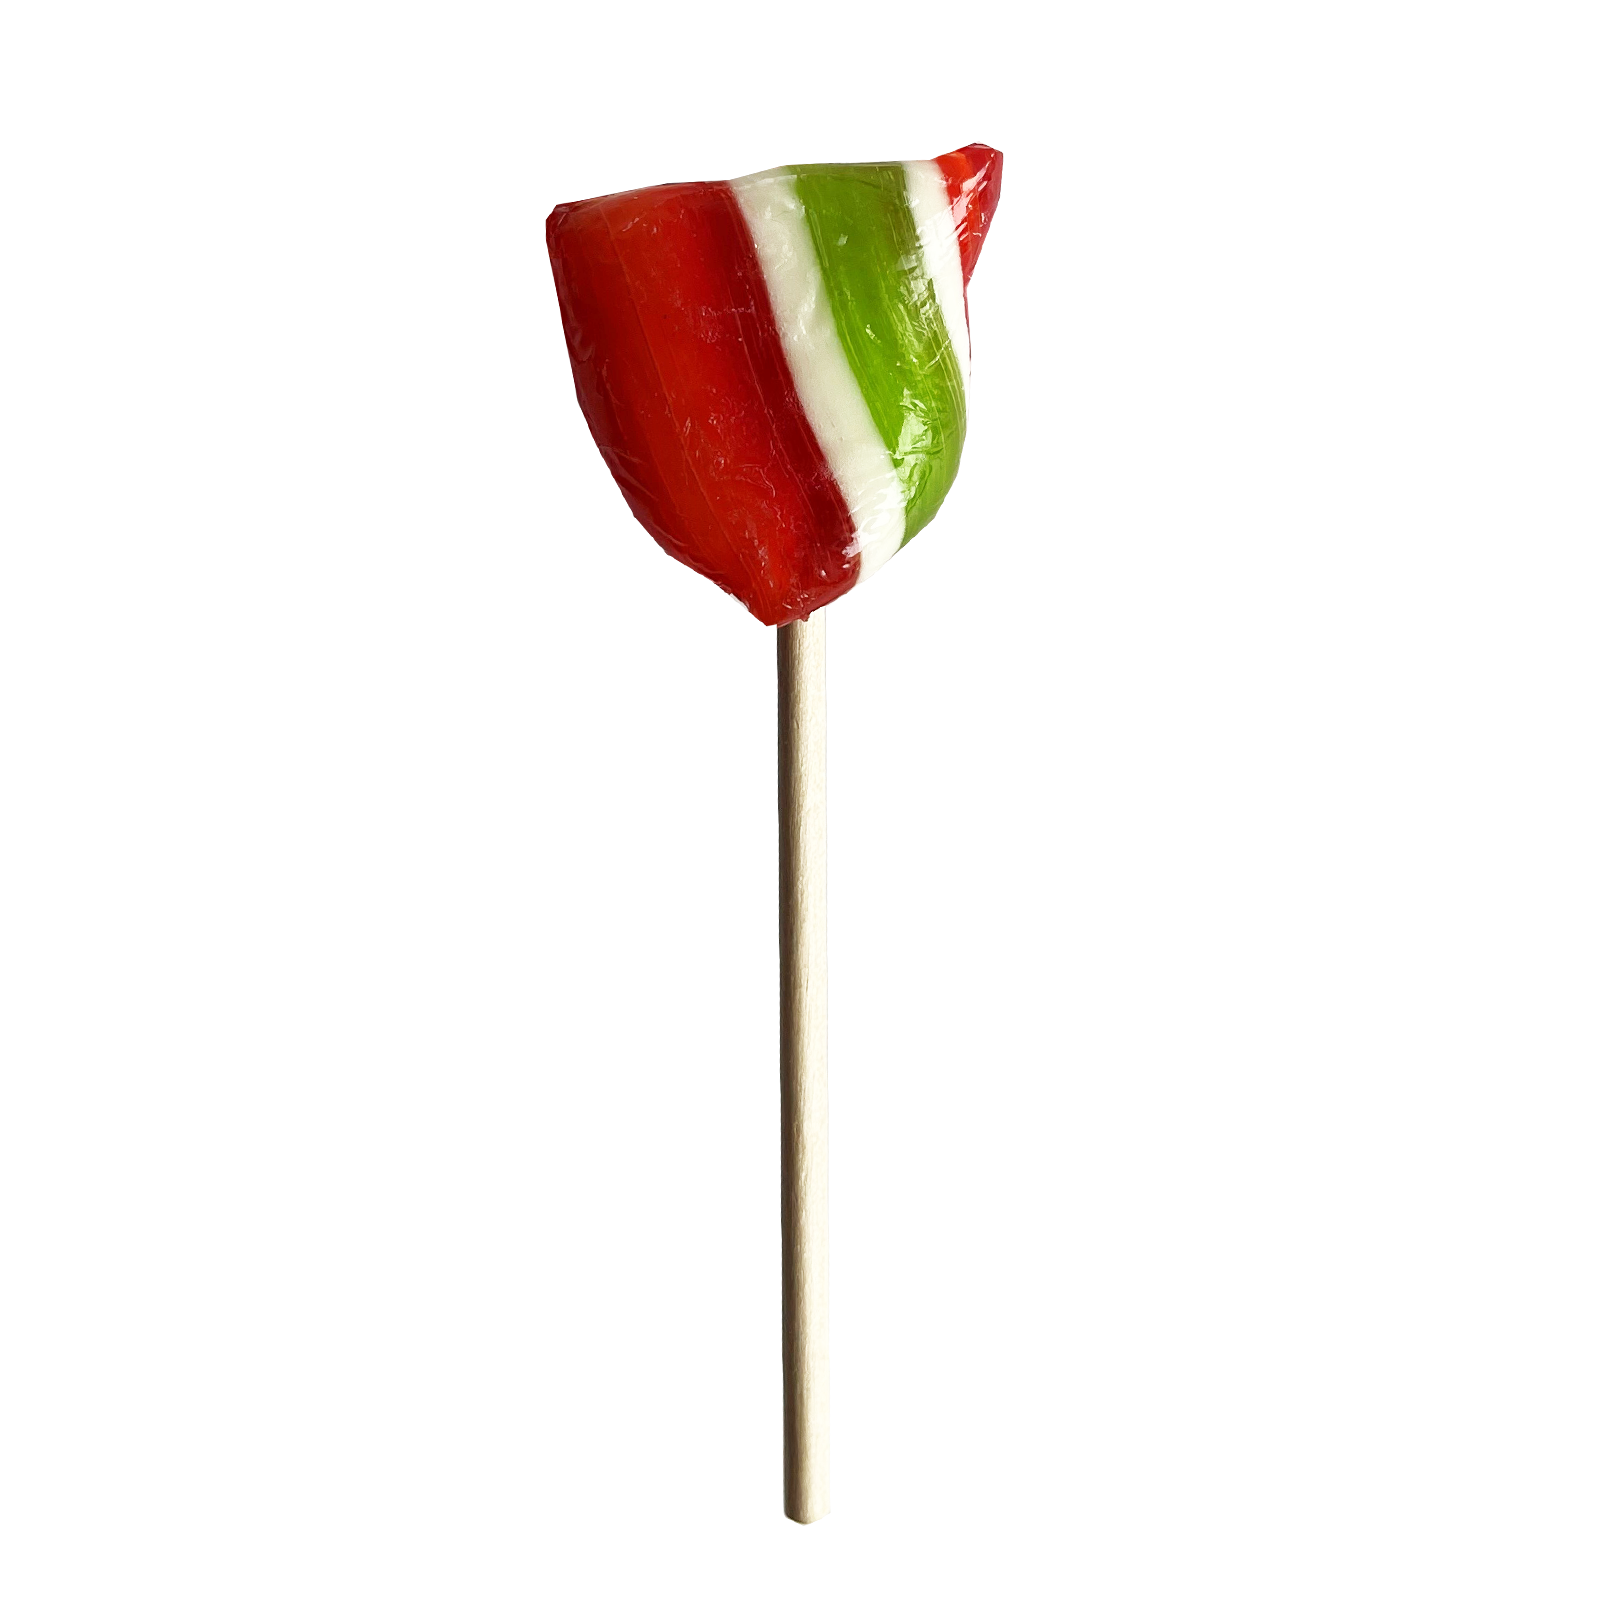 Fruit Lollipop small